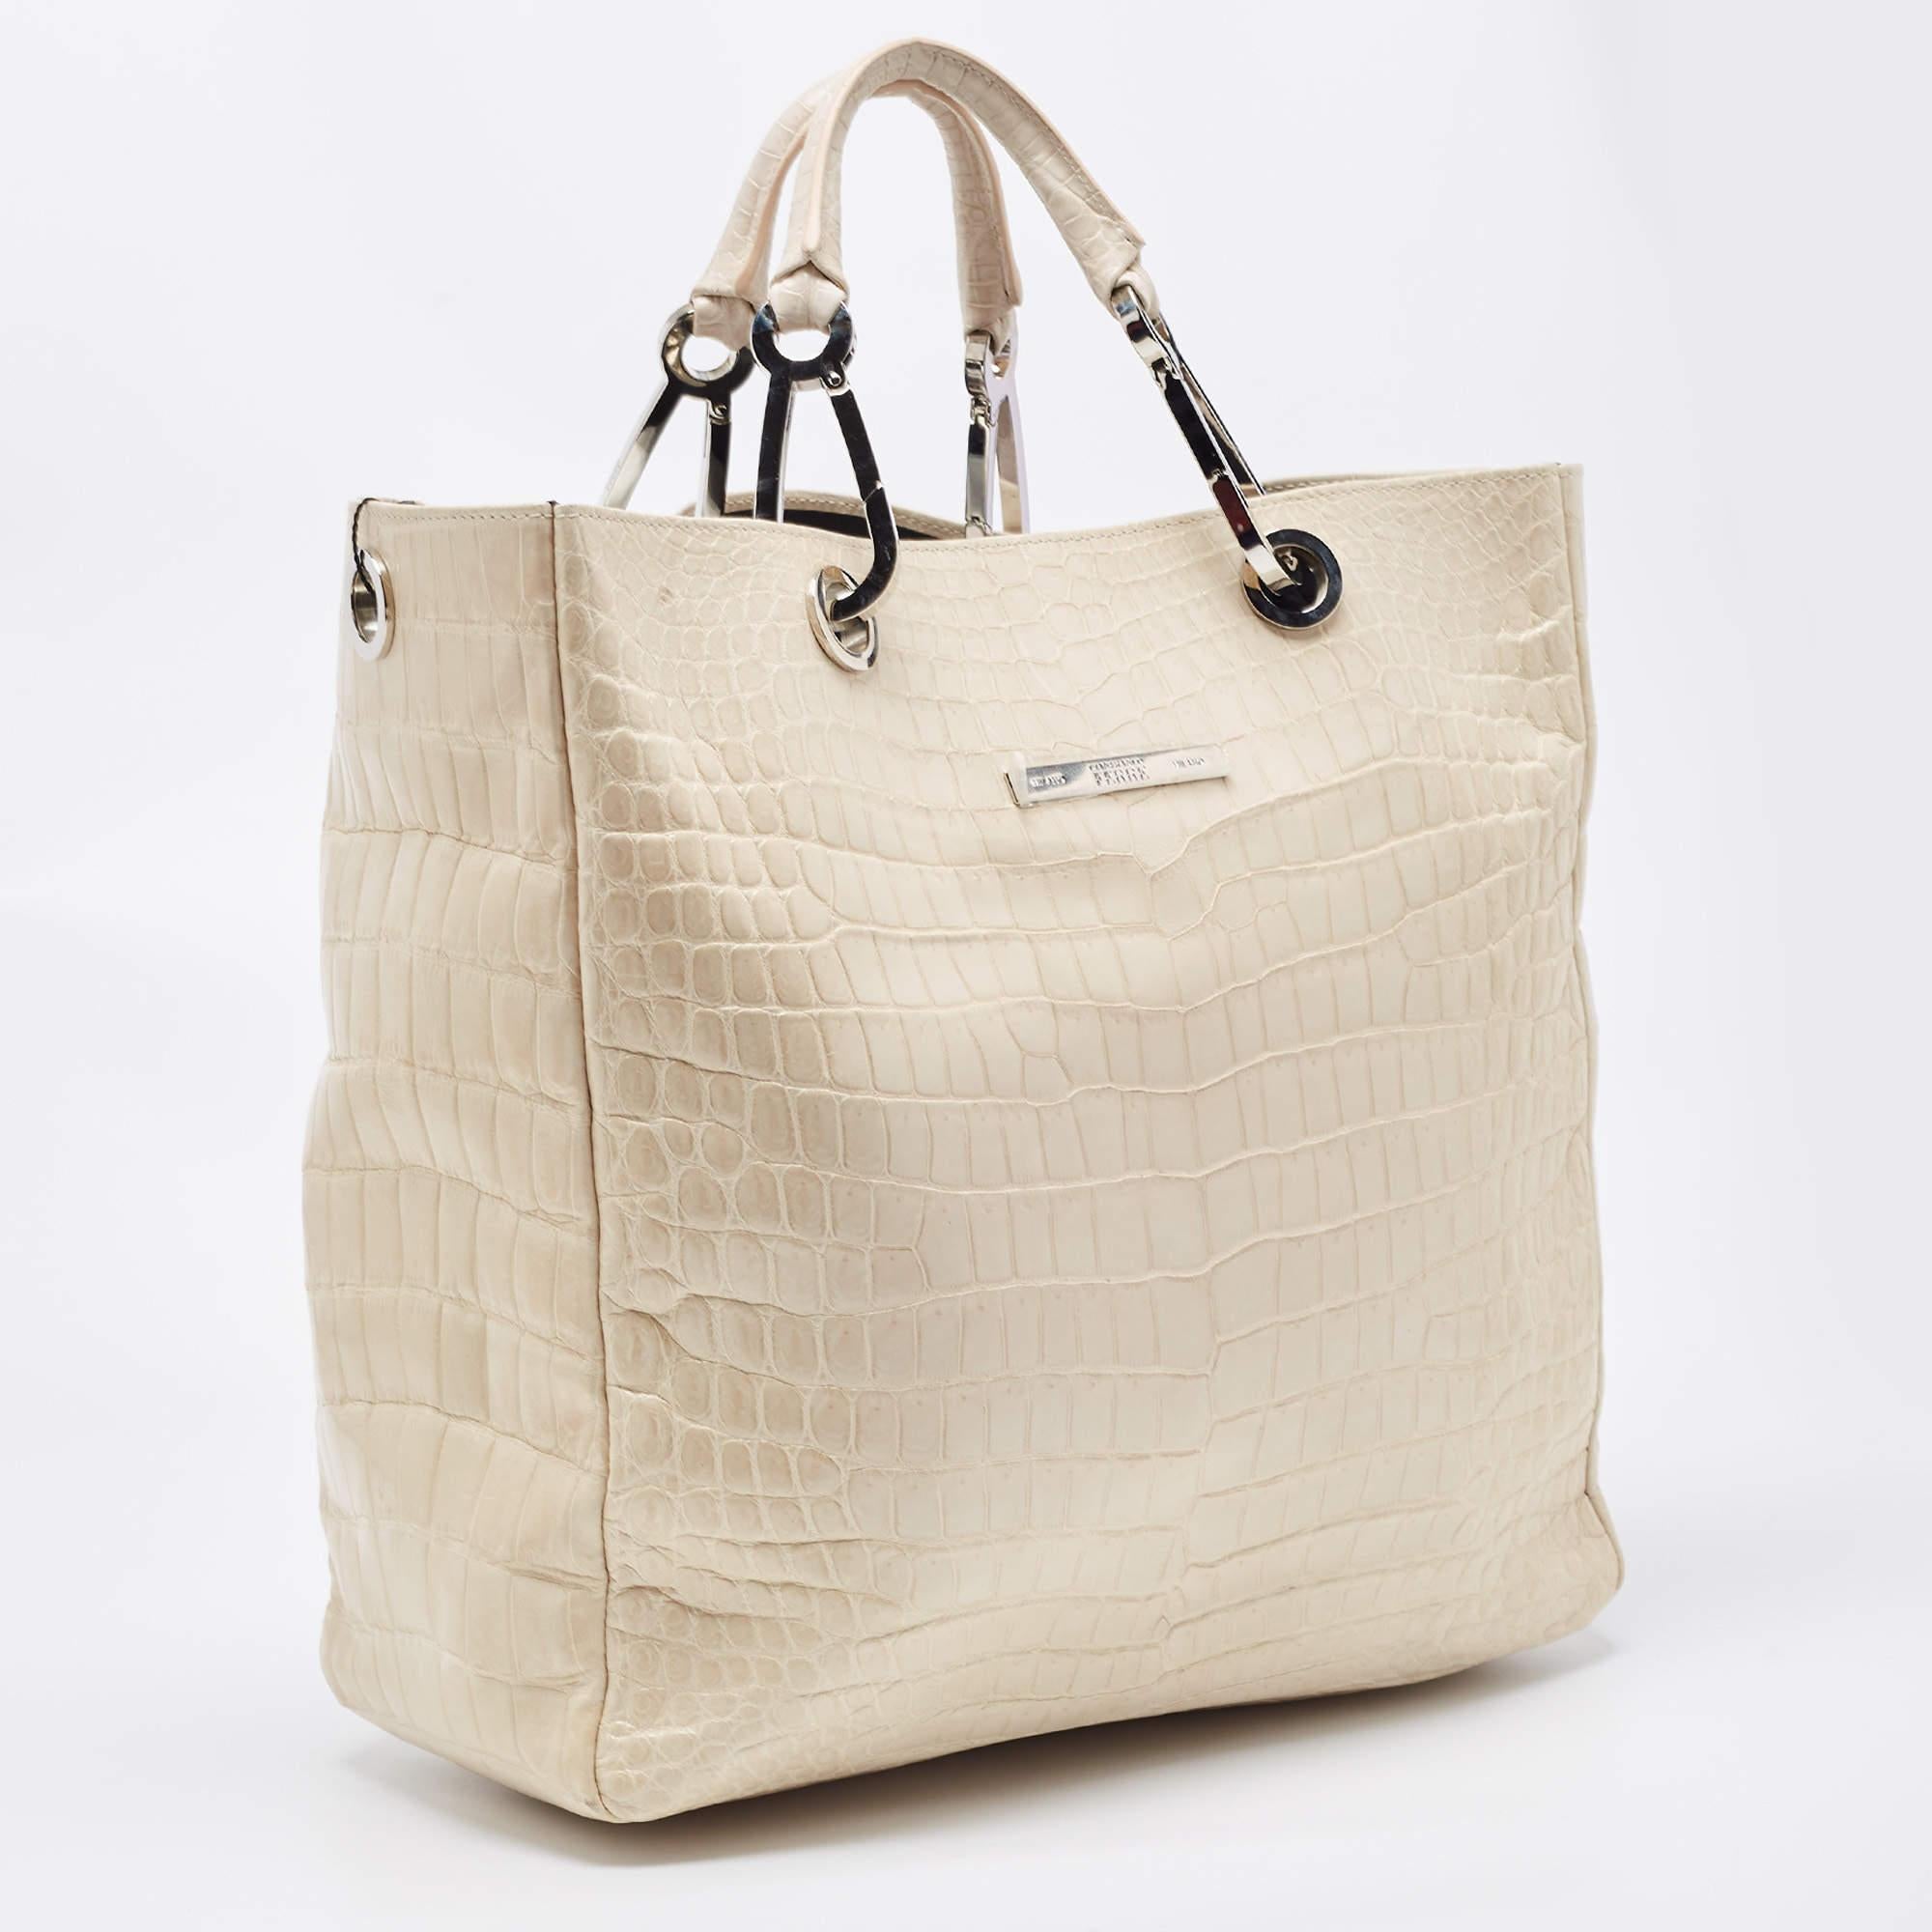 Mit dieser Tasche von Gianfranco Ferre können Sie alles, was Sie brauchen, stilvoll transportieren. Gefertigt aus den besten MATERIALEN, ist dies ein Accessoire, das dauerhaften Stil und Gebrauch verspricht.

